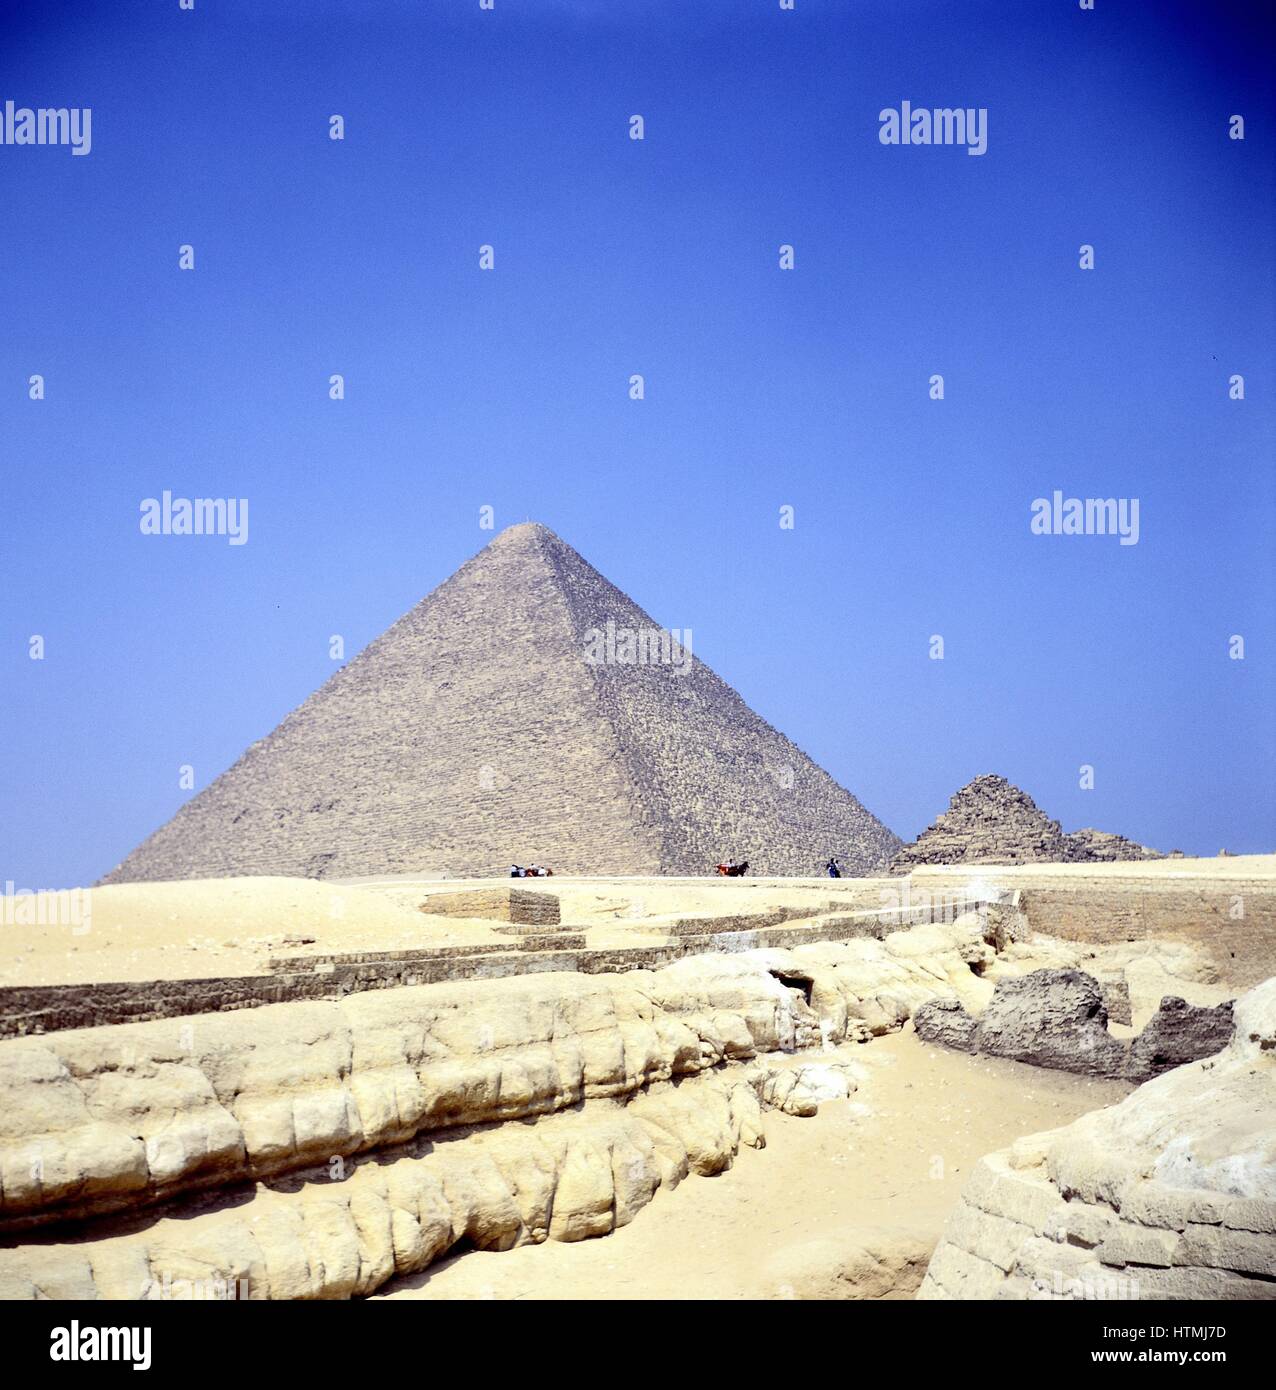 Pyramide von Gizeh. Eines der sieben Weltwunder Pyramiden Stockfoto